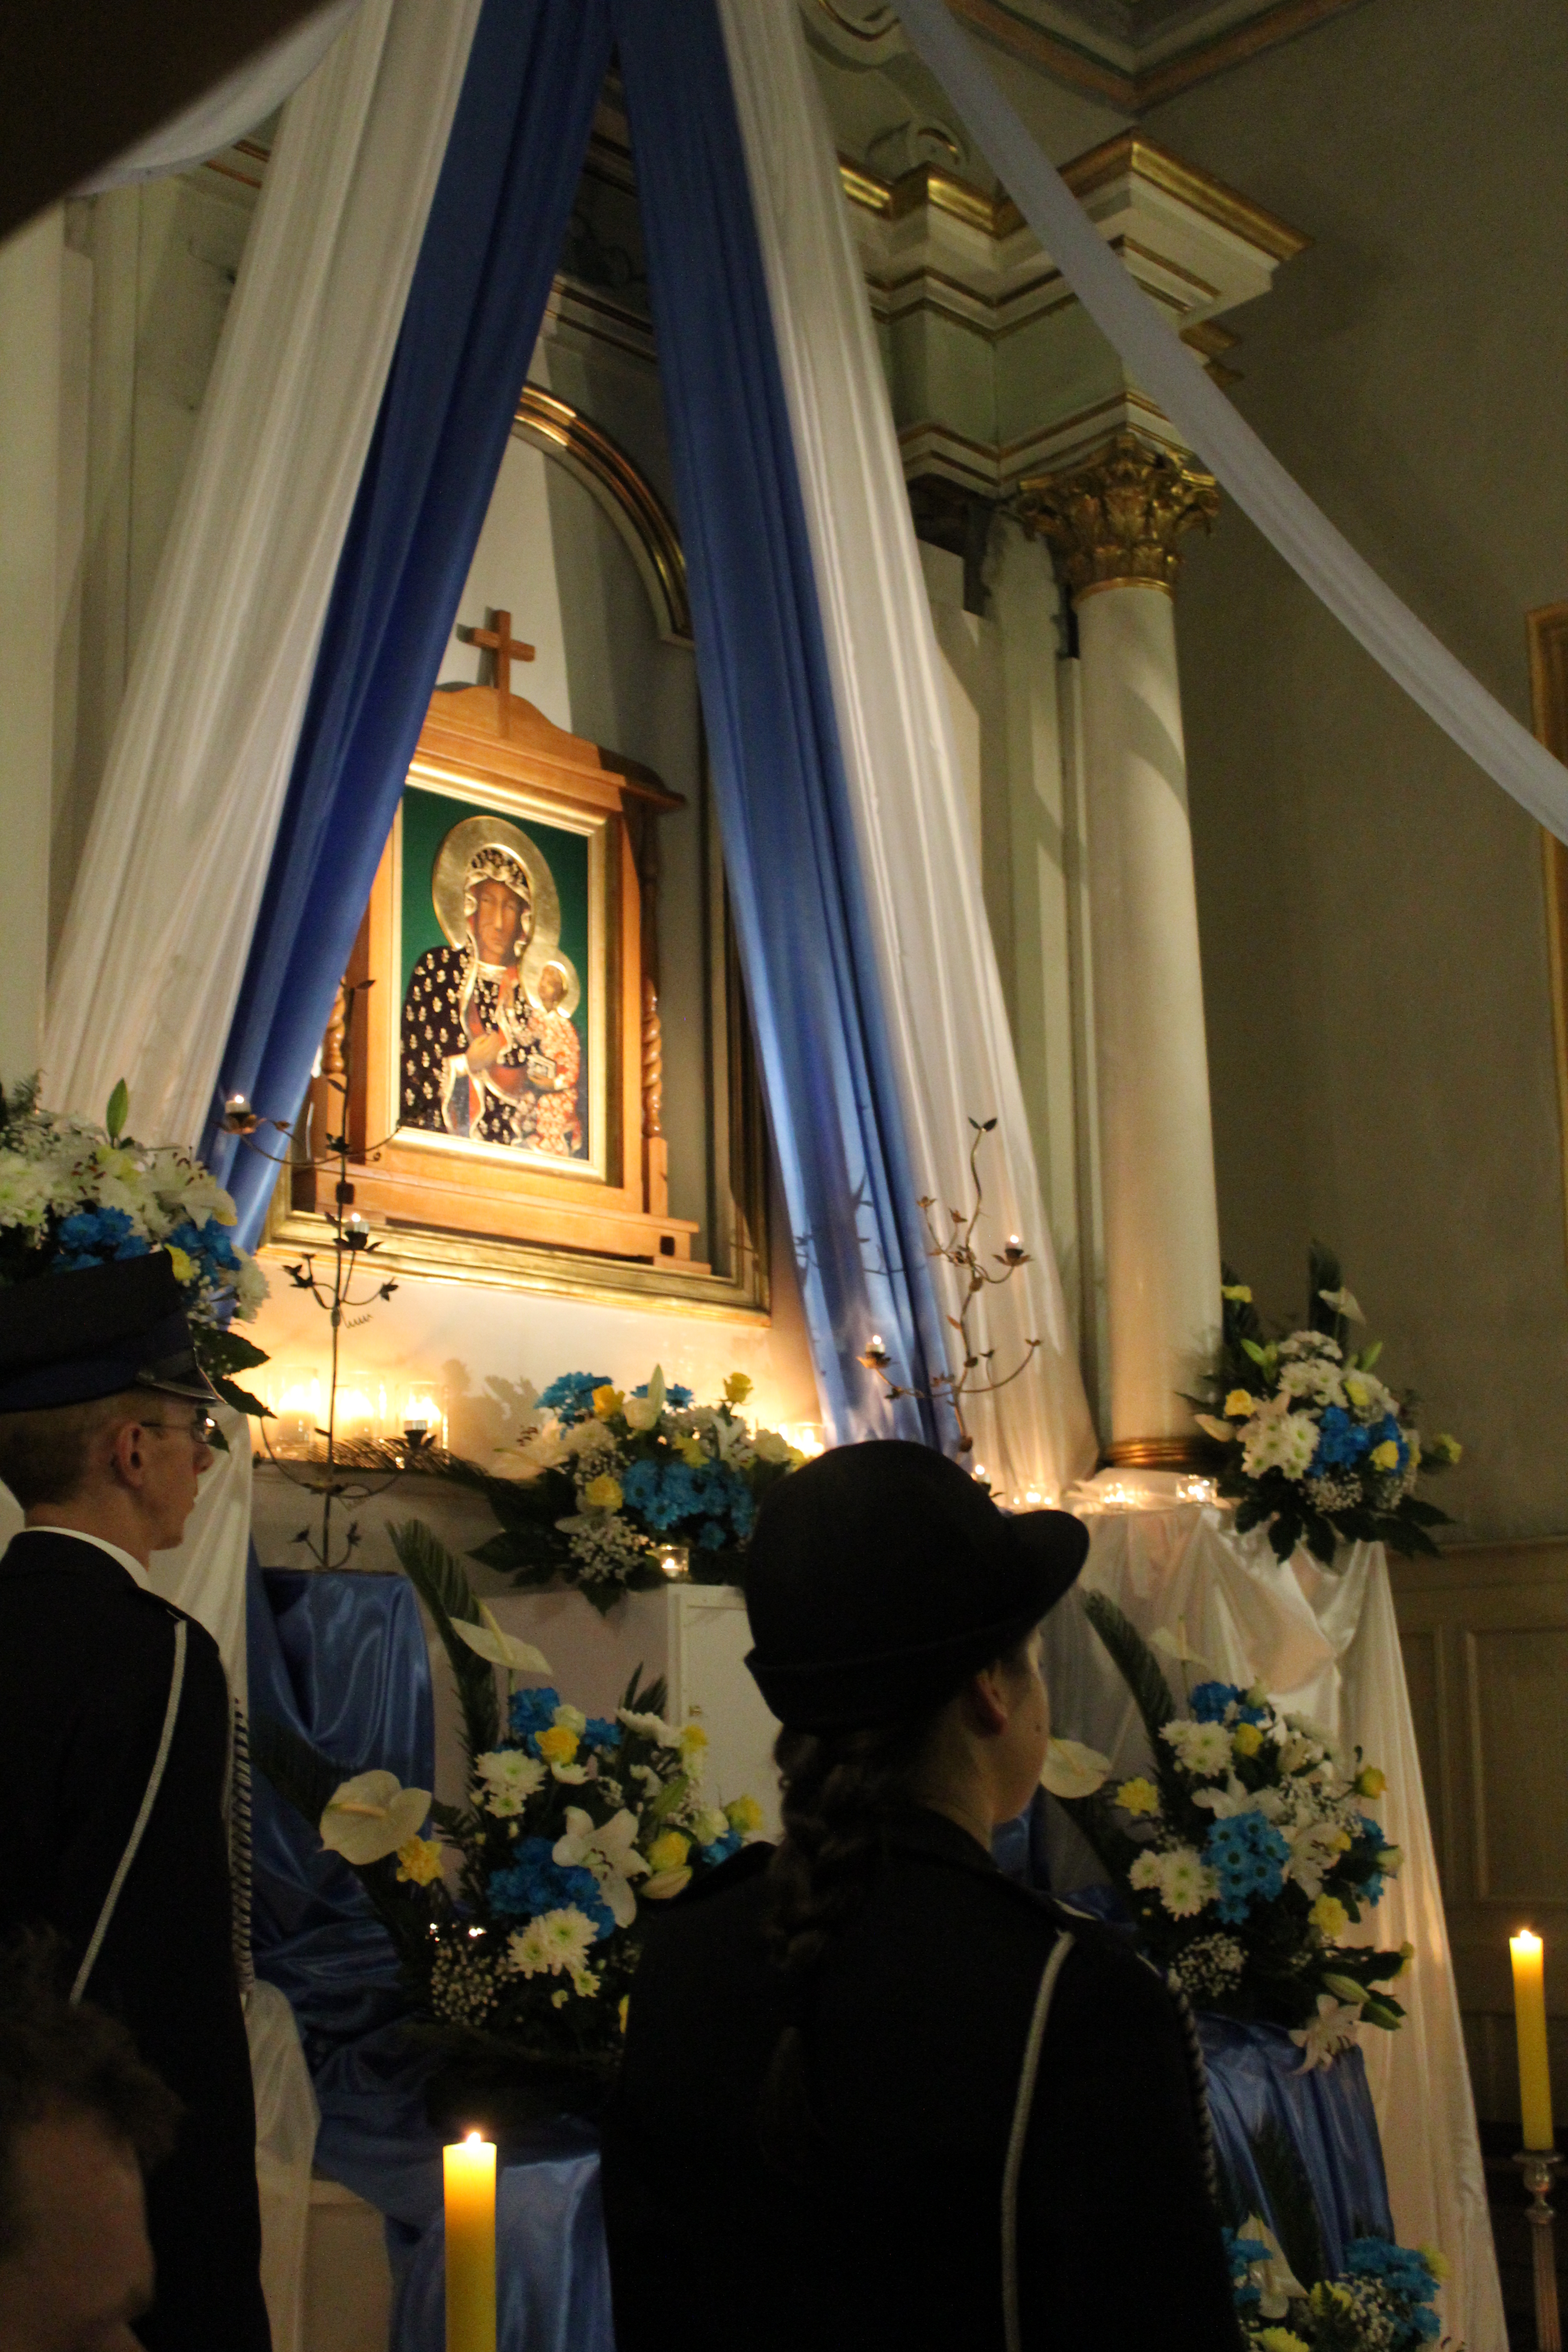 IMG 6544 - Druga rocznica nawiedzenia obrazu Matki Boskiej Częstochowskiej